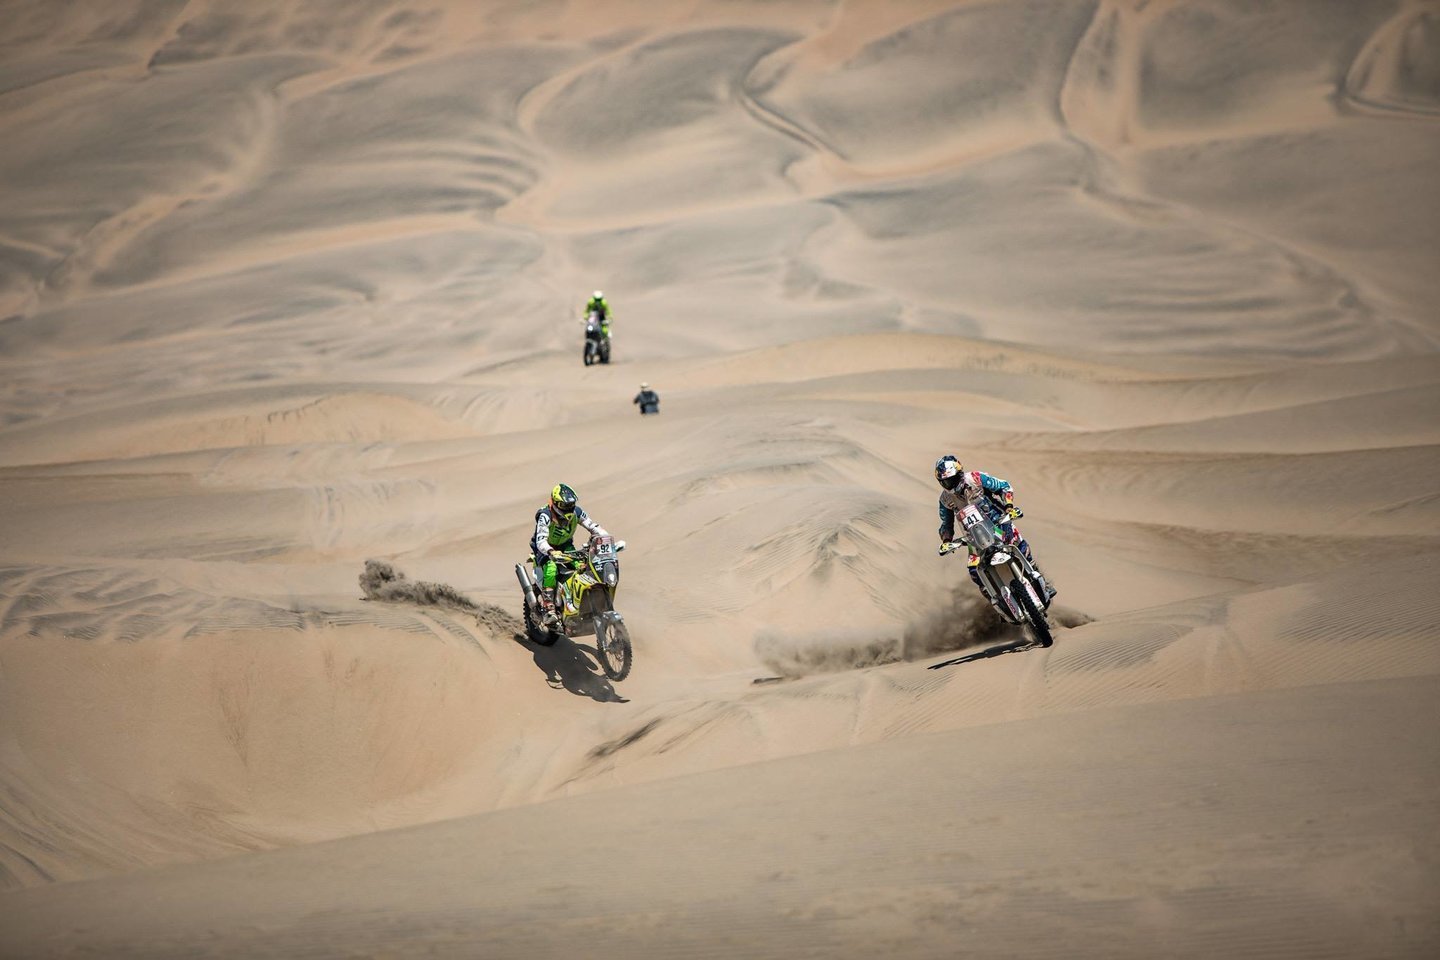 Pirmasis Dakaro ralis buvo sugalvotas kaip didžiulis nuotykis entuziastams, kai jo sumanytojas Thierry'is Sabine pats važinėjo dykumoje ir pasiklydo.<br>Pranešėjų spaudai nuotr.